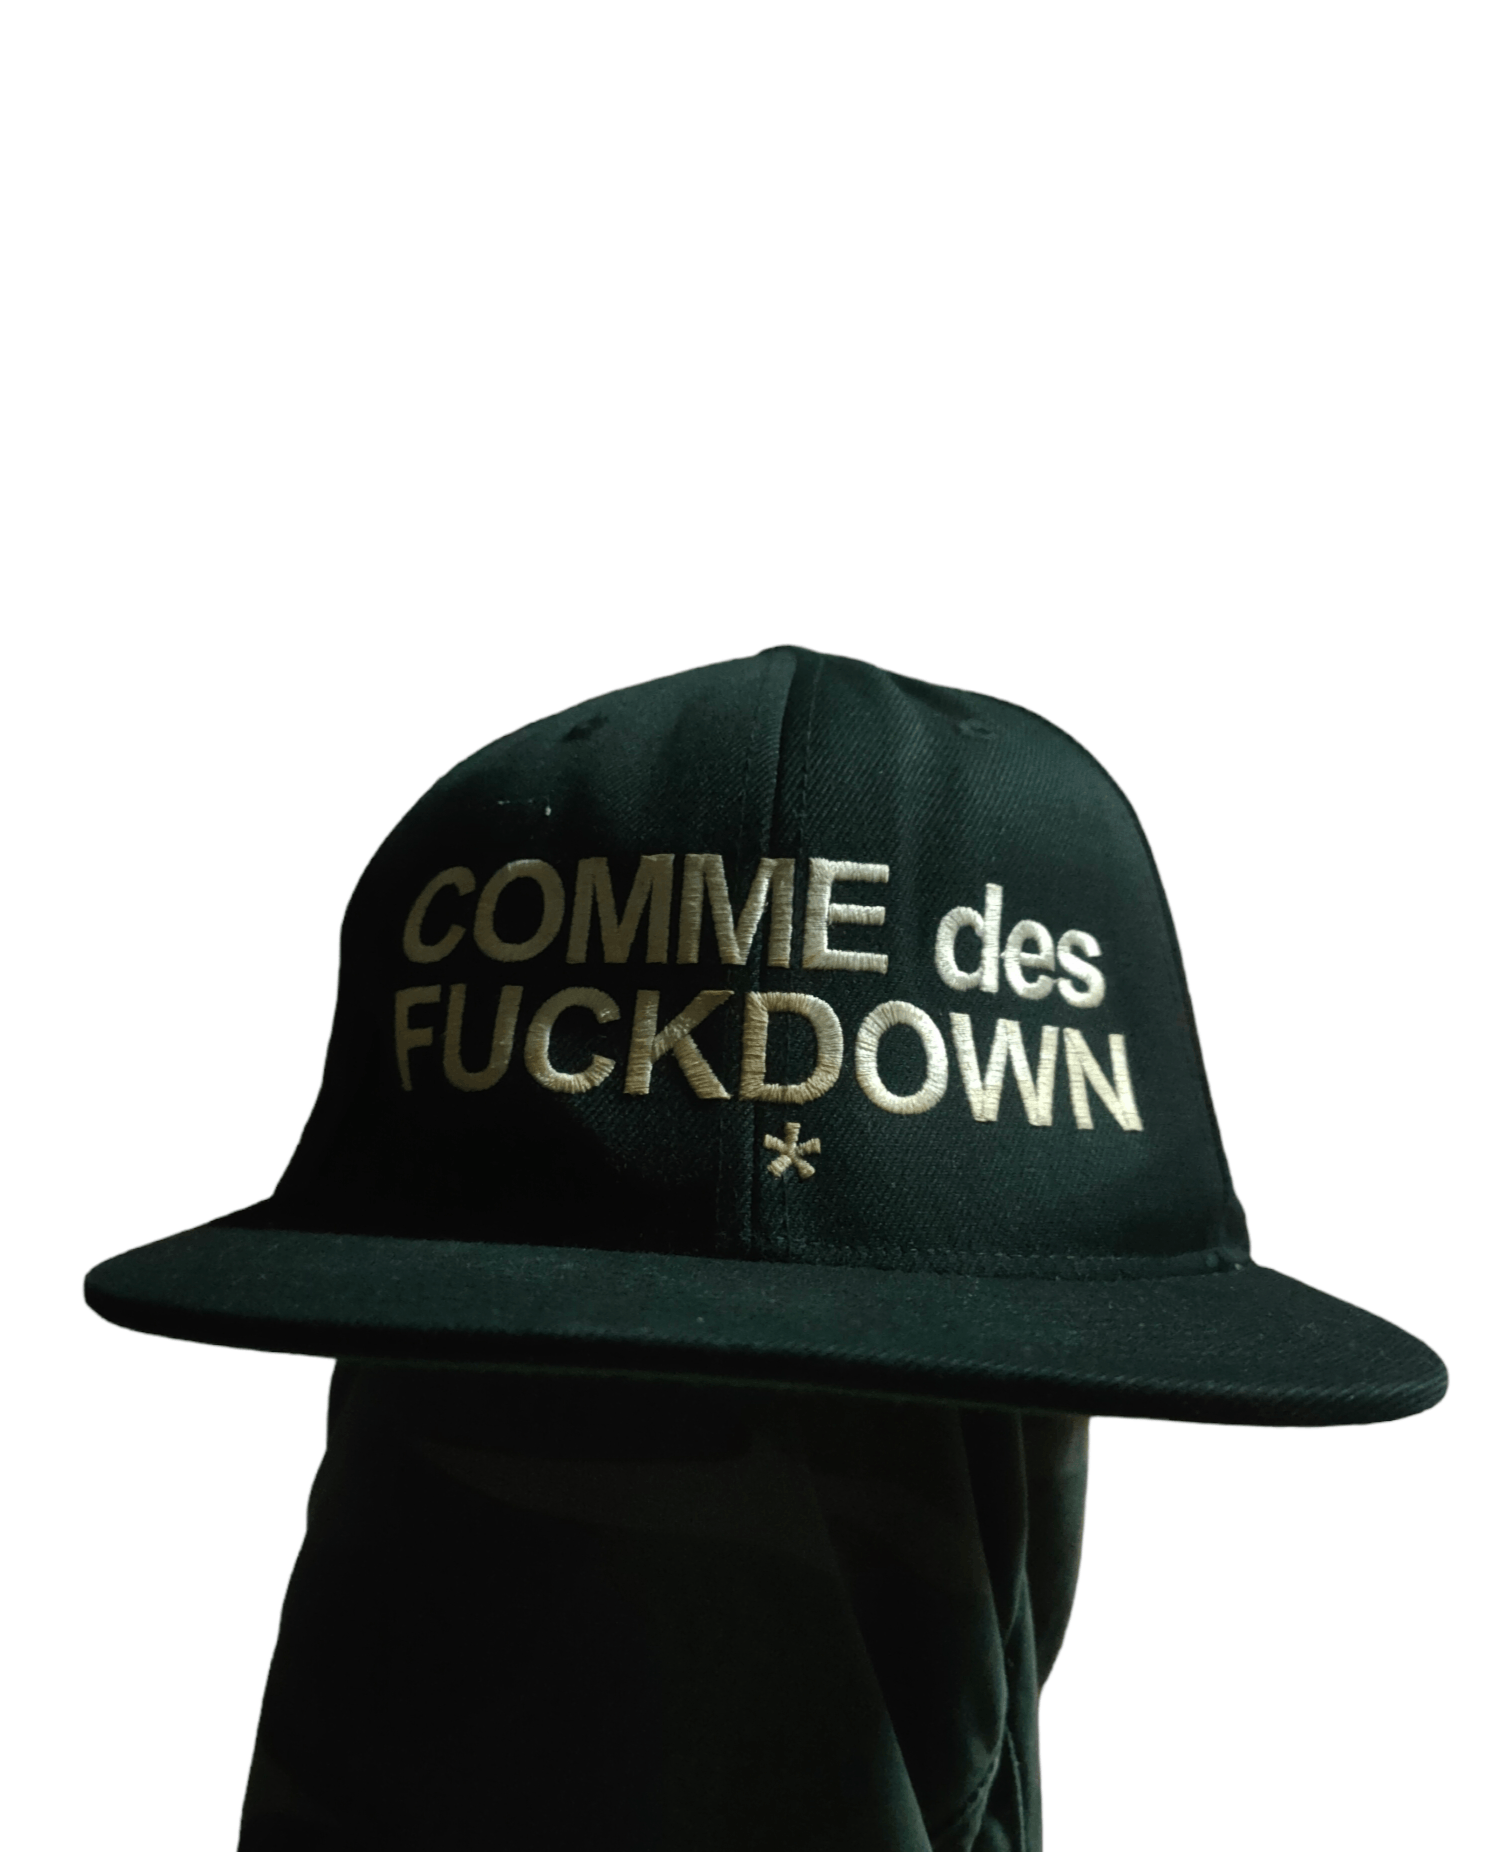 Comme Des Fuck Down comme des fuck down cap | Grailed